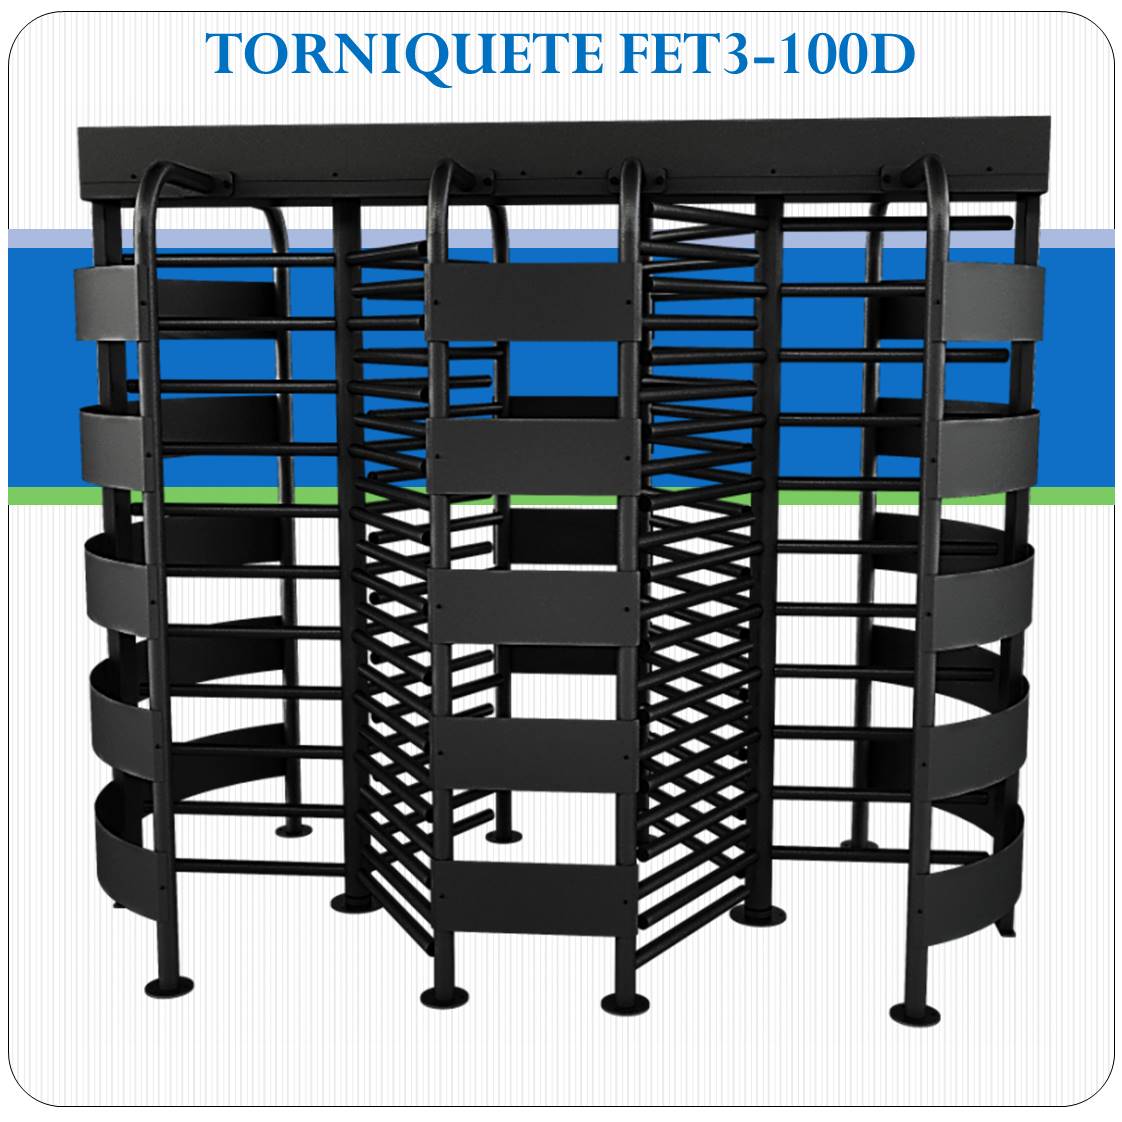 Torniquete FET3-100D